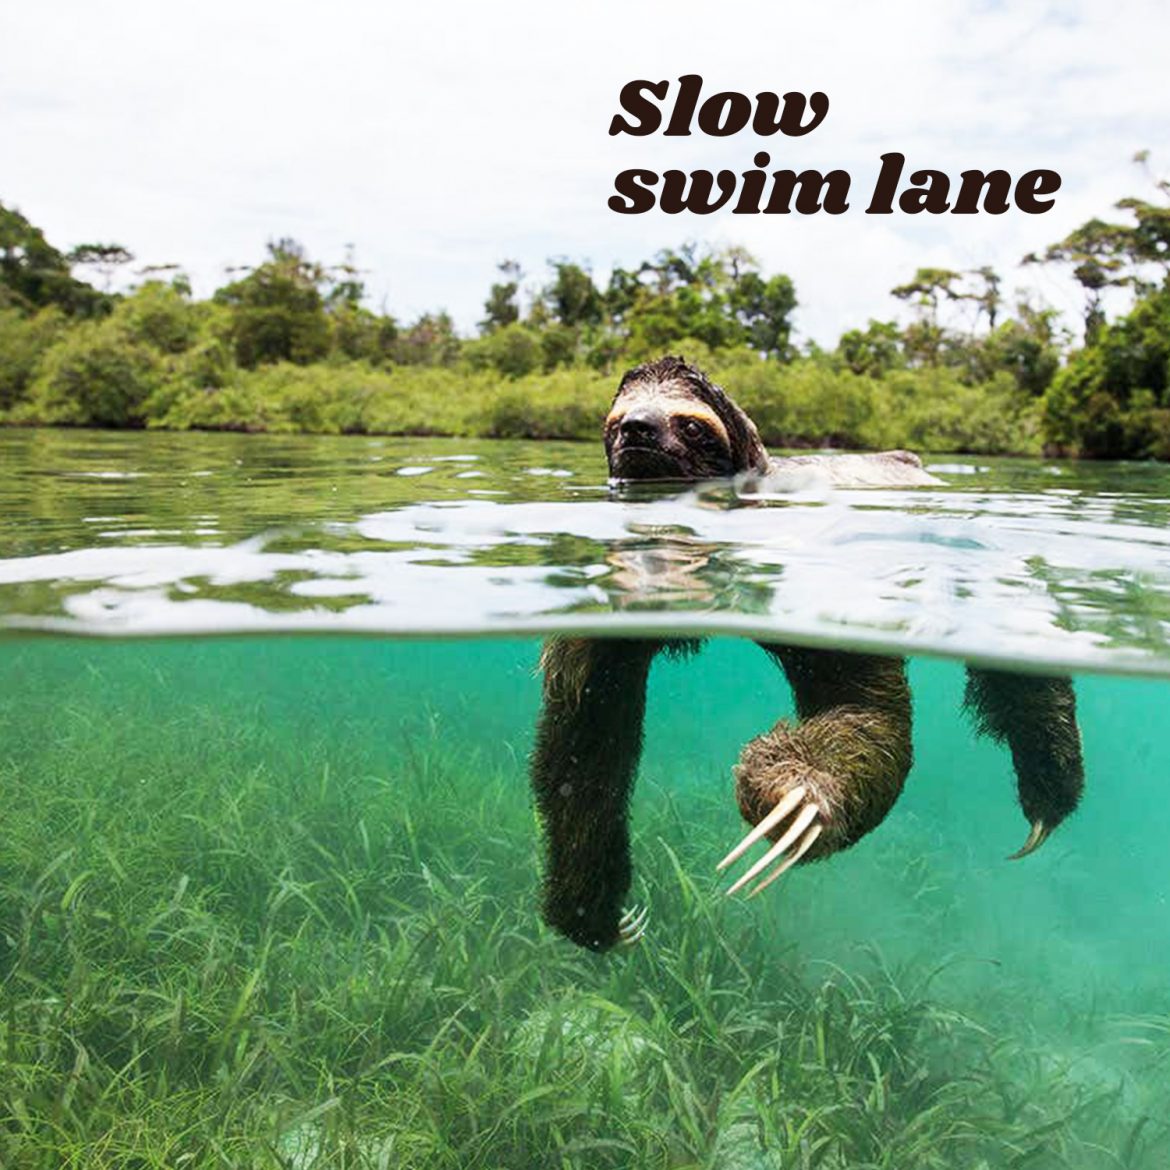 Slow swim lane